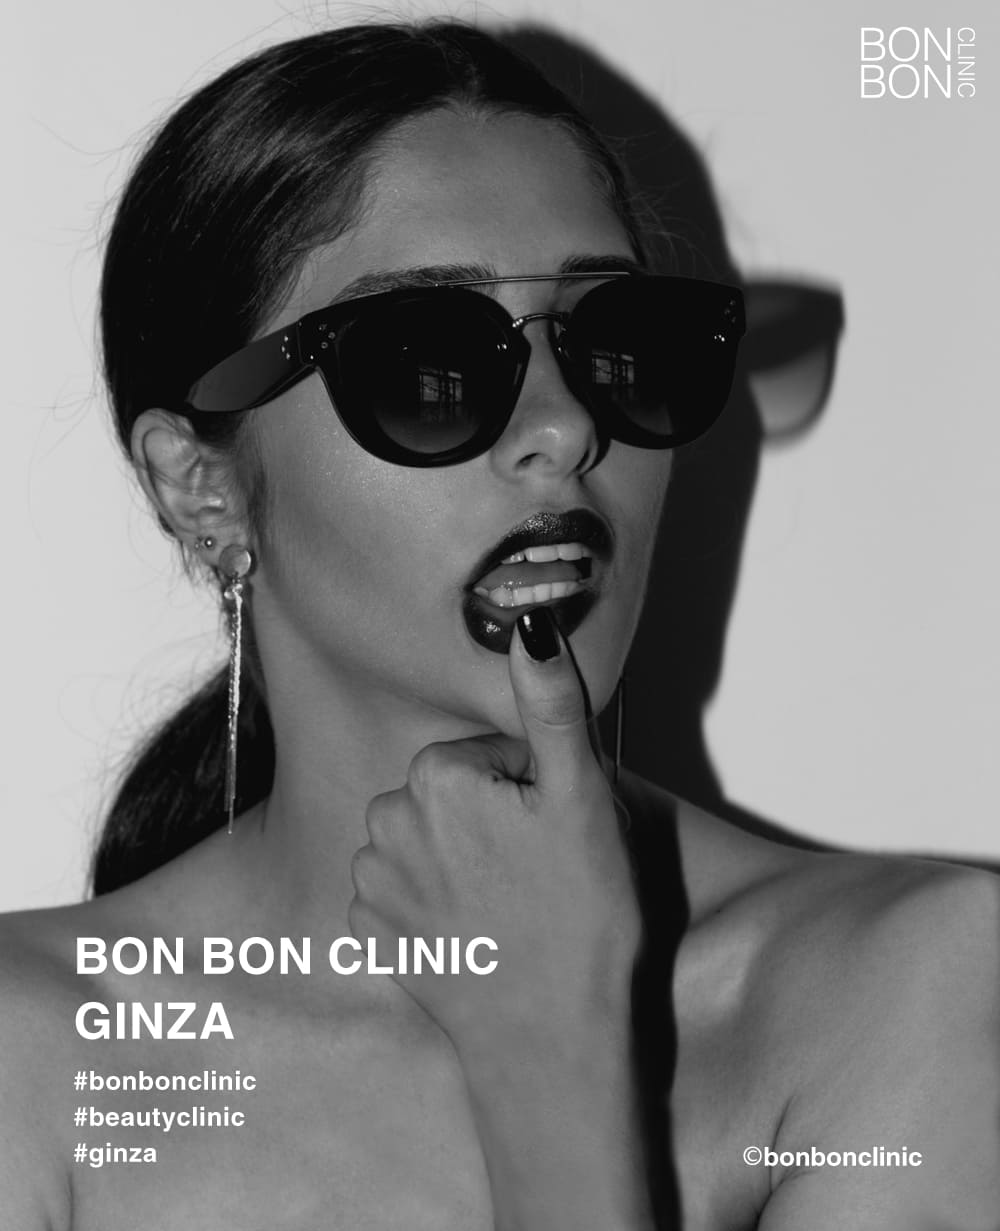 BON BON CLINICは東京銀座の美容クリニック。